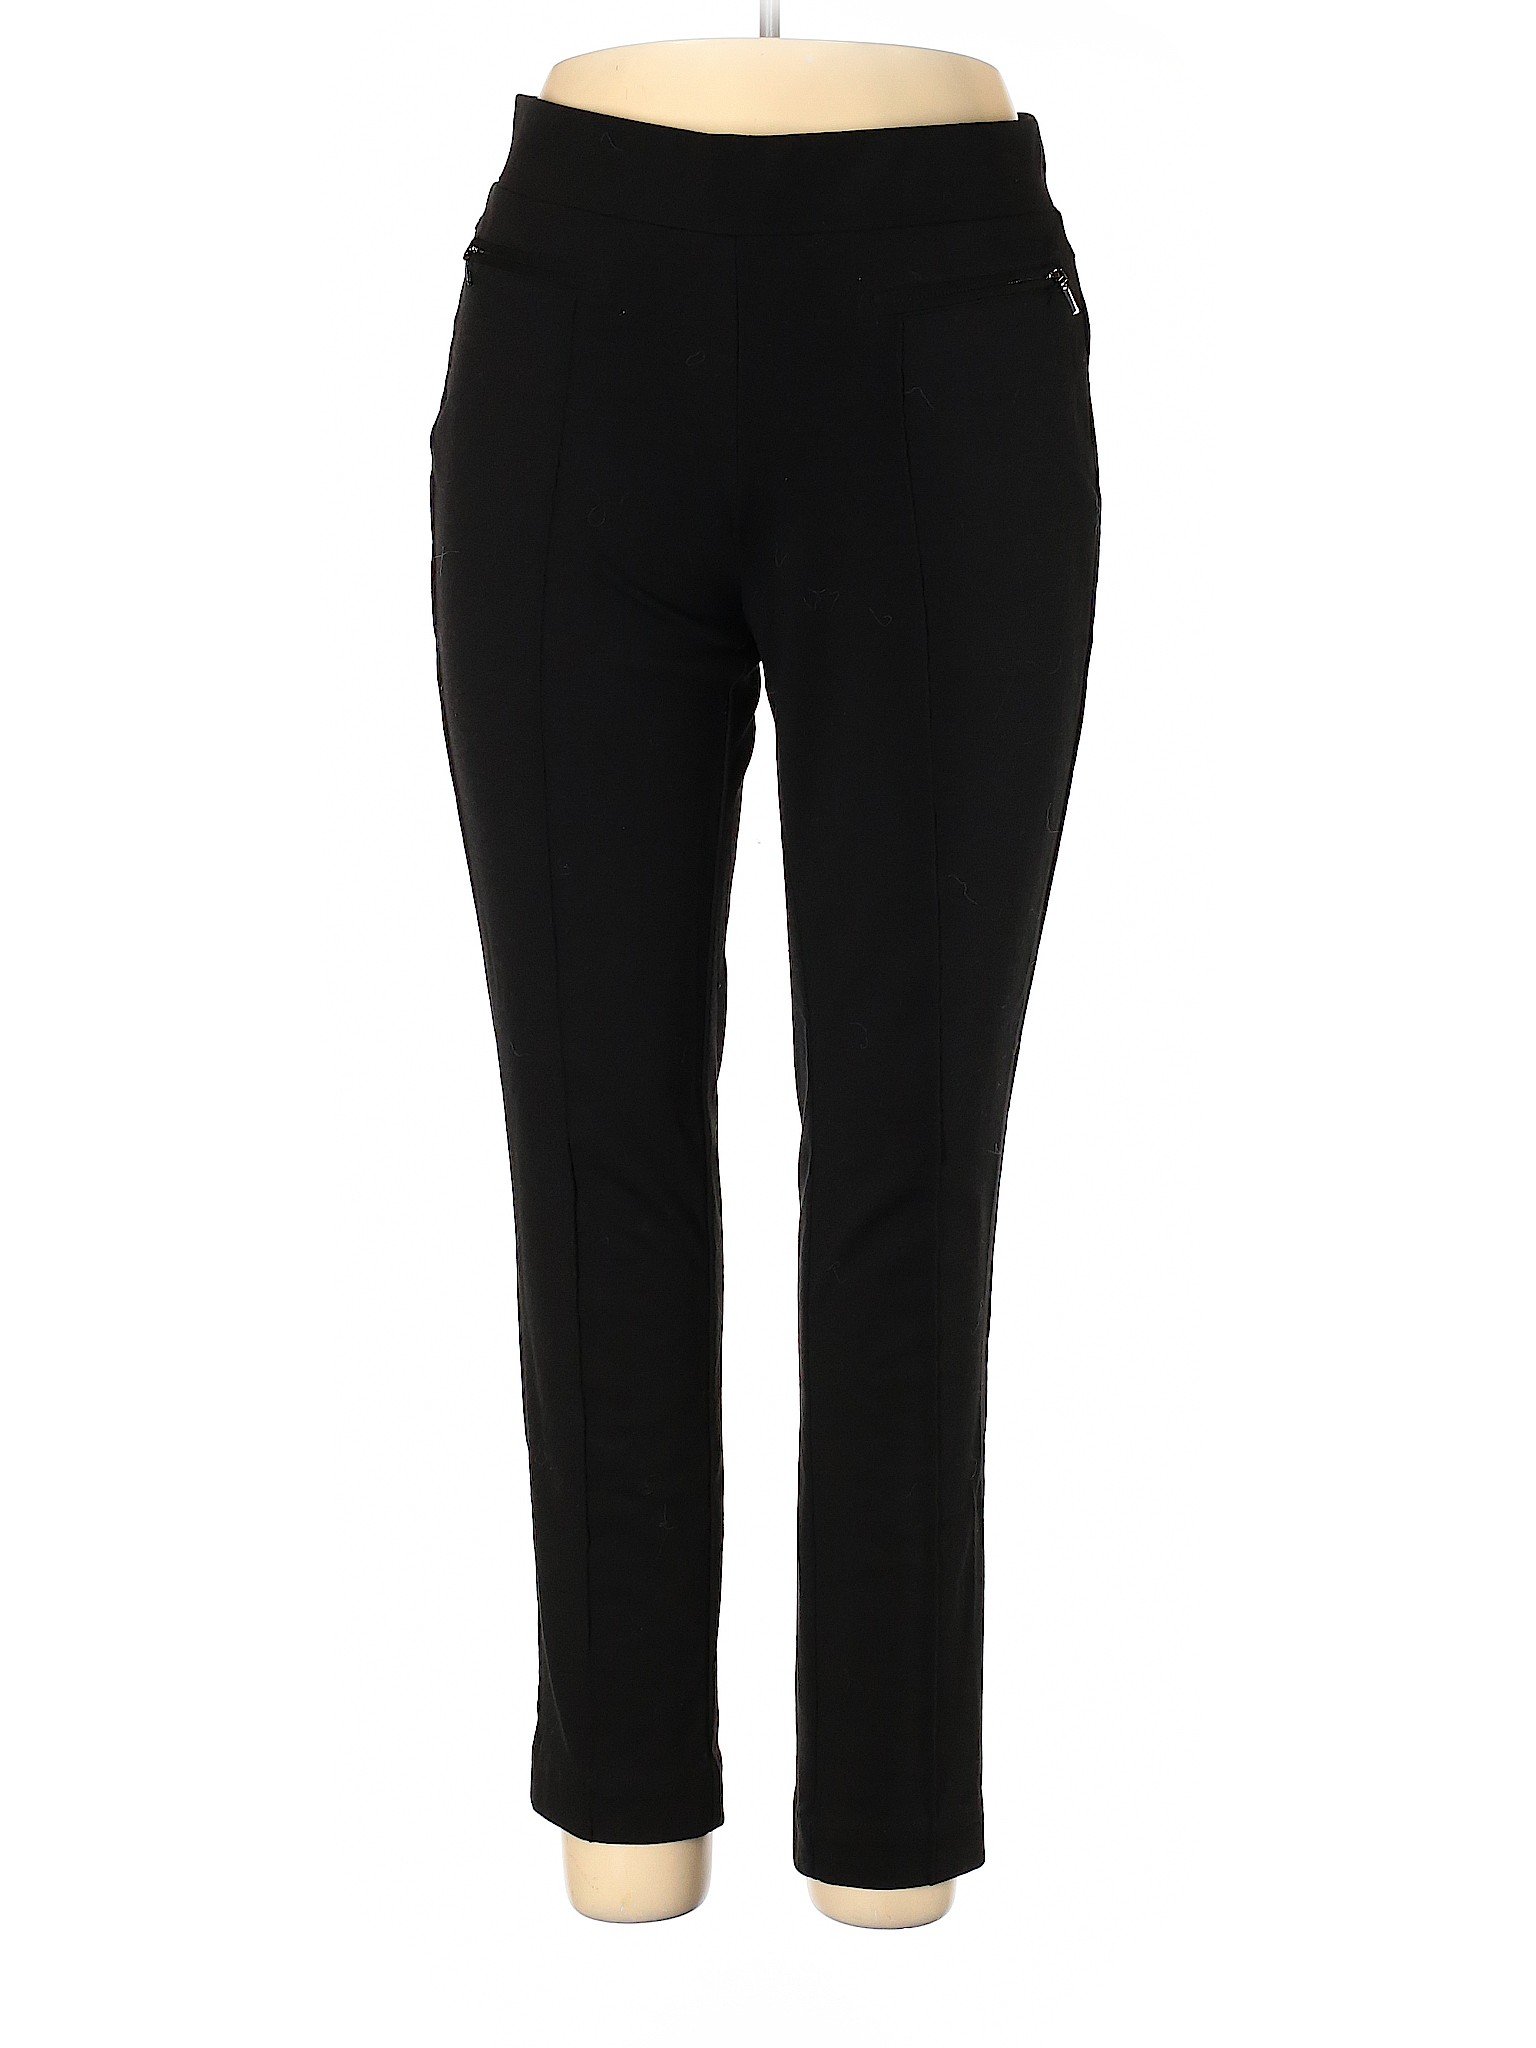 Rafaella Women Black Dress Pants 14 | eBay